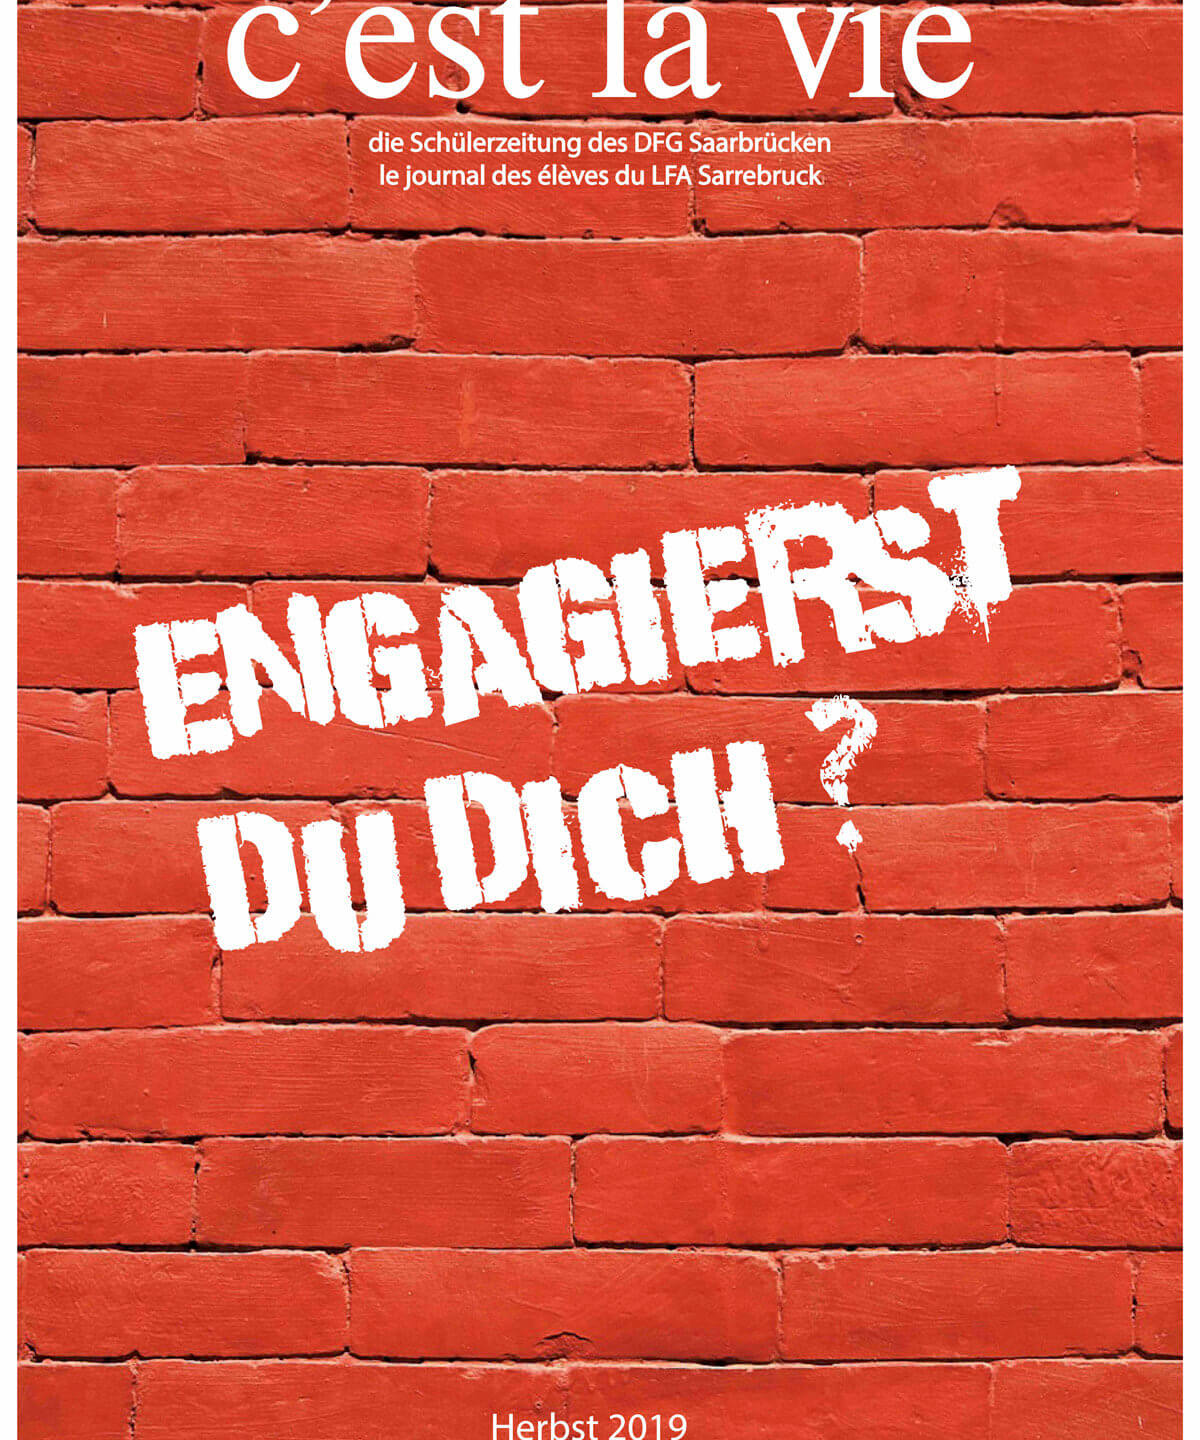 Neue Ausgabe von „C’est la vie“ – Thema: Engagement